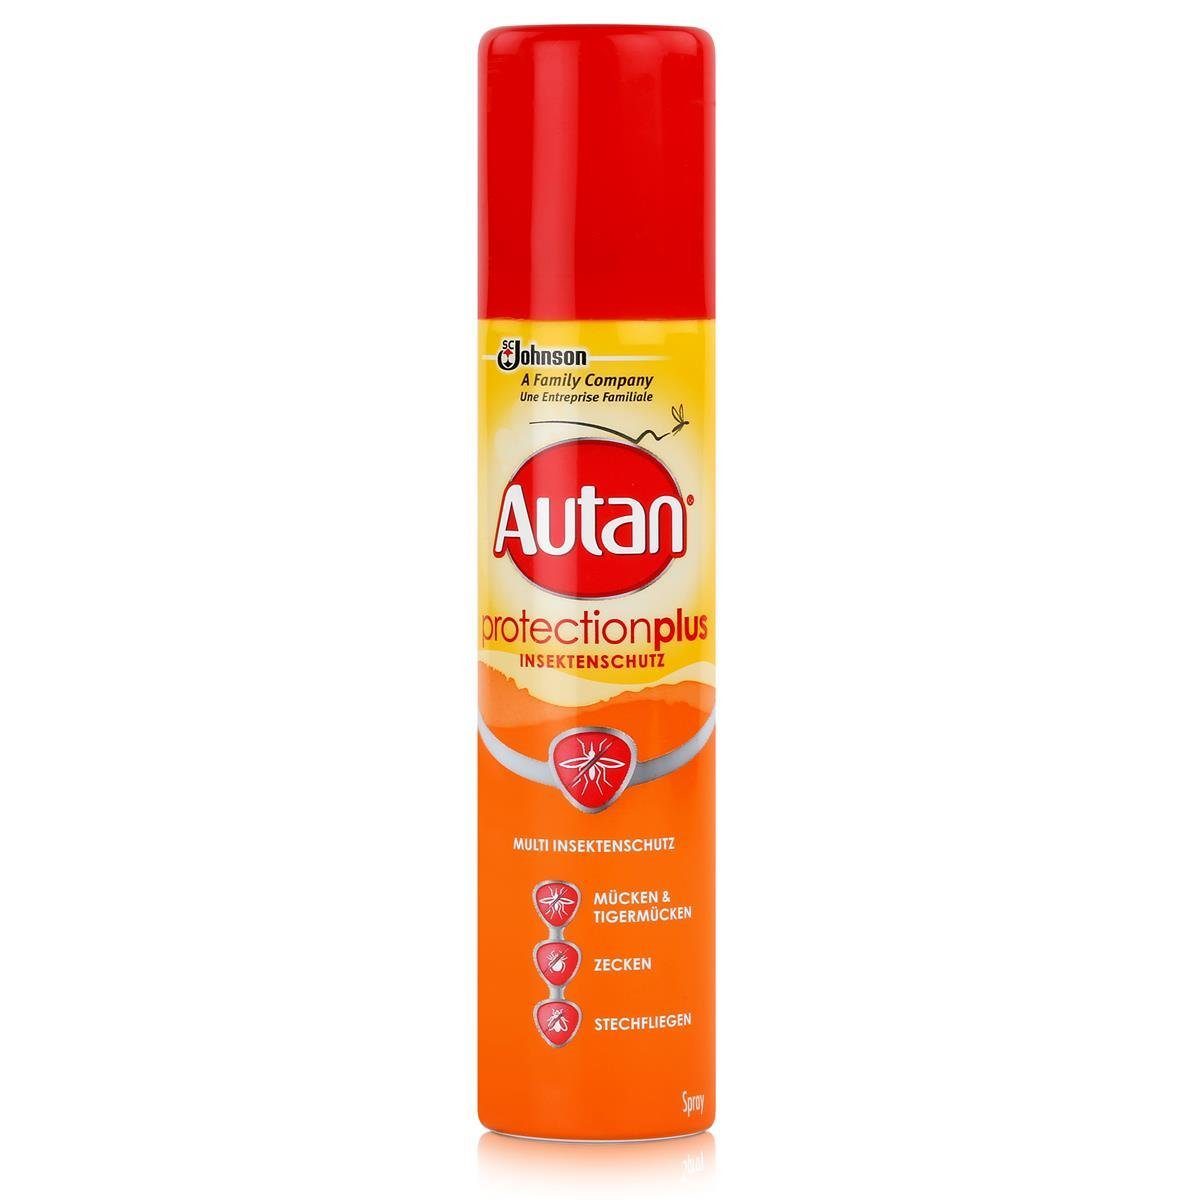 100ml Plus Multi Insektenschutz Autan Insektenspray Spray Protection Autan